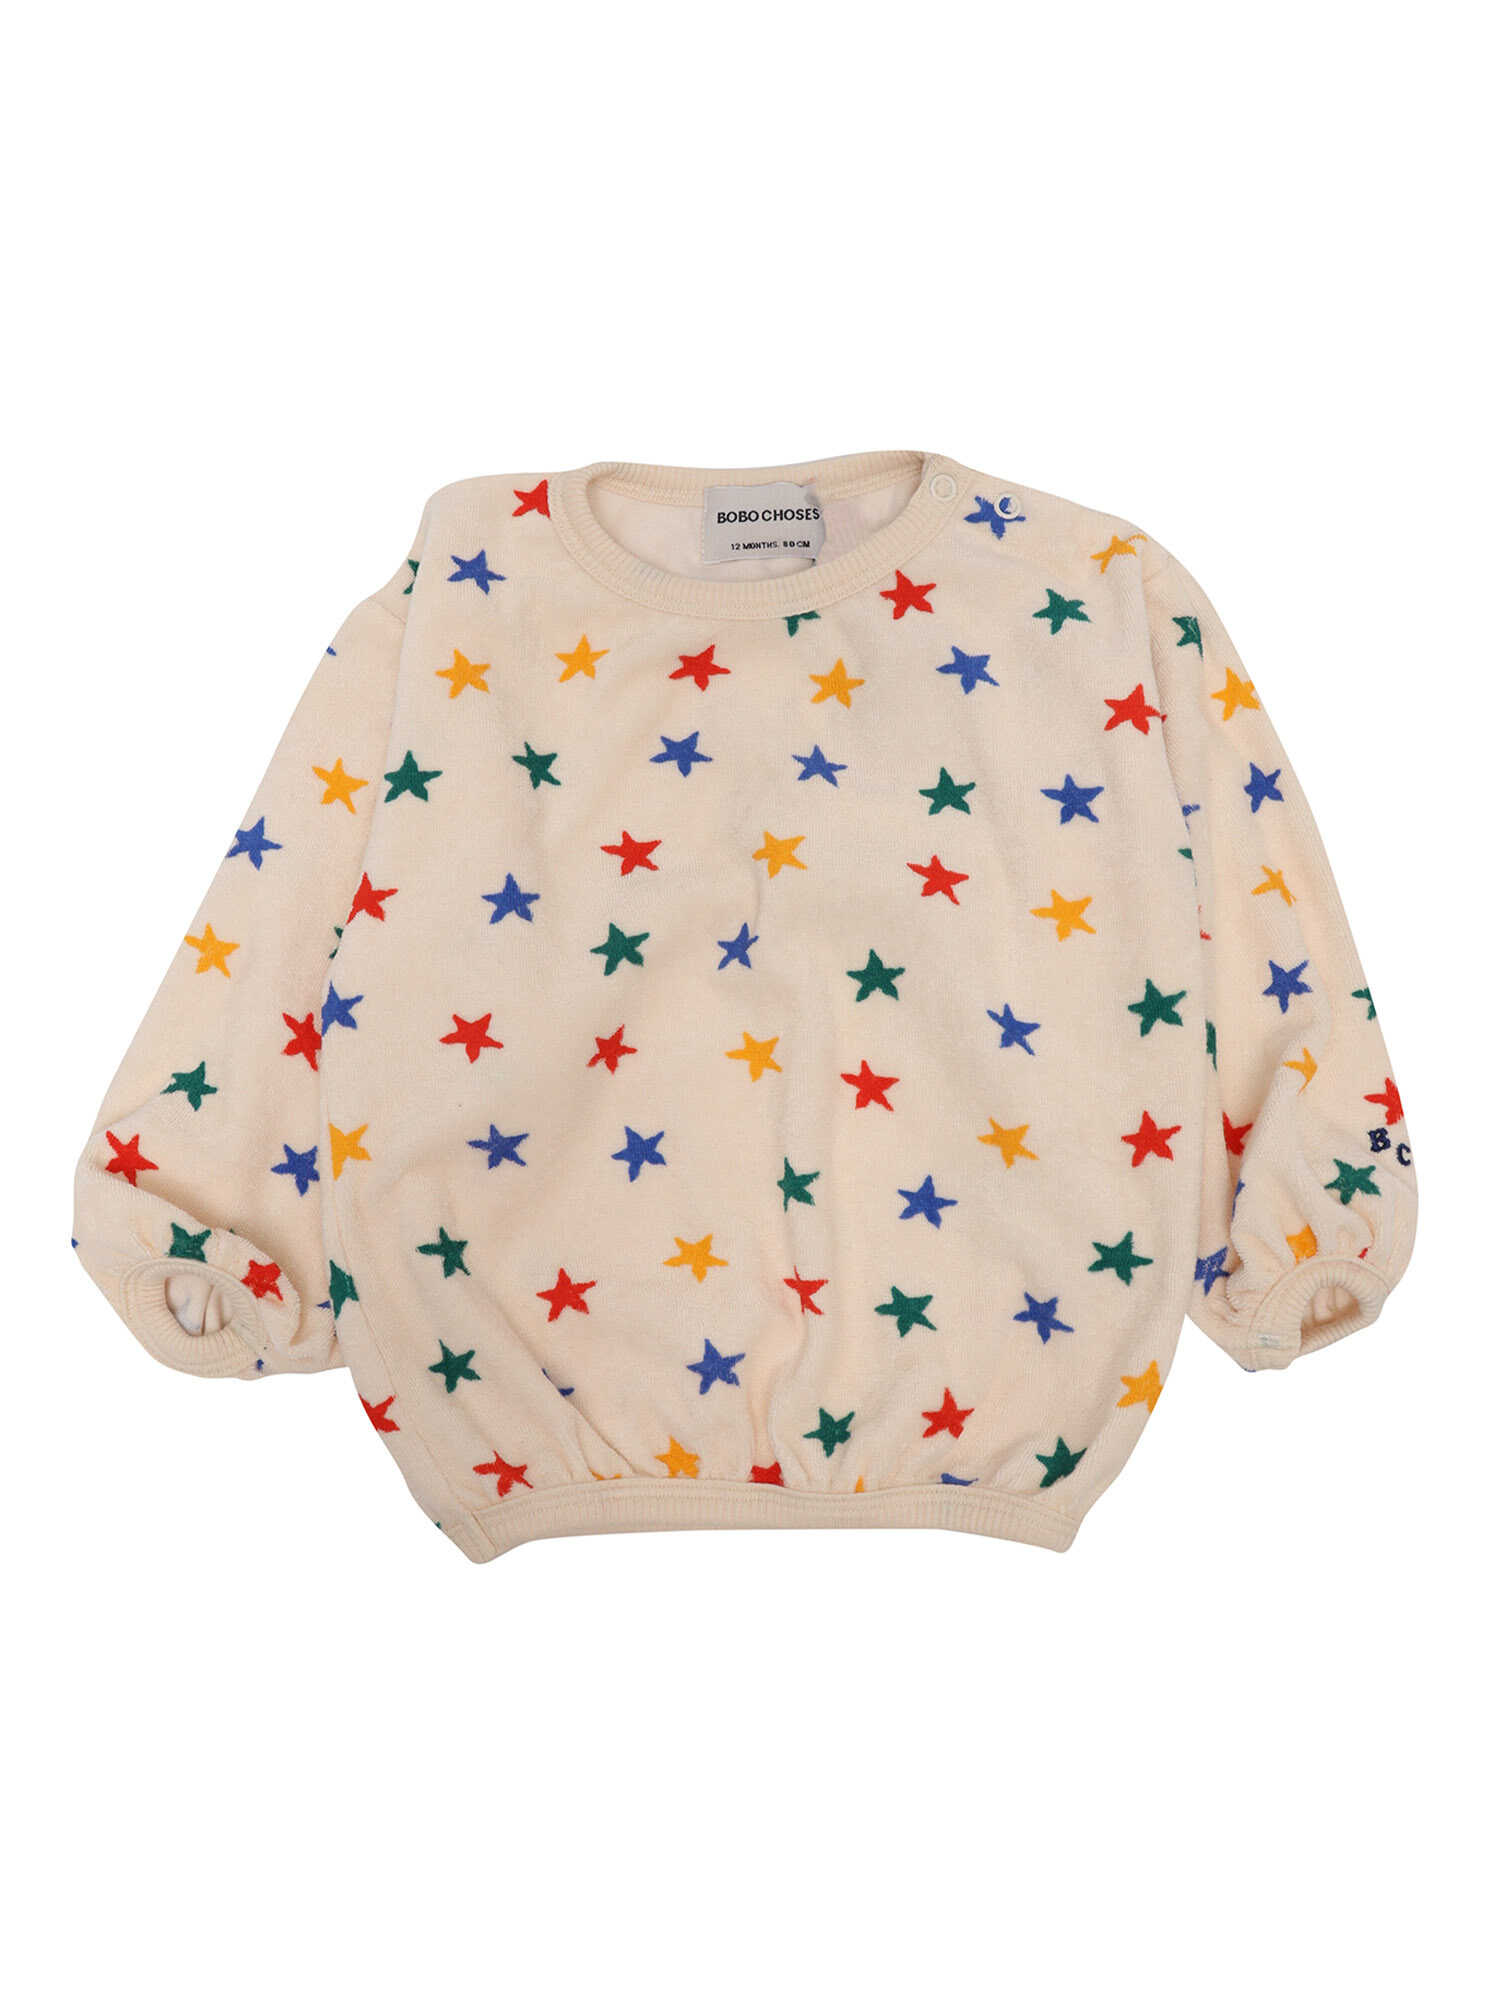 Poze Bobo Choses Star sweatshirt Beige